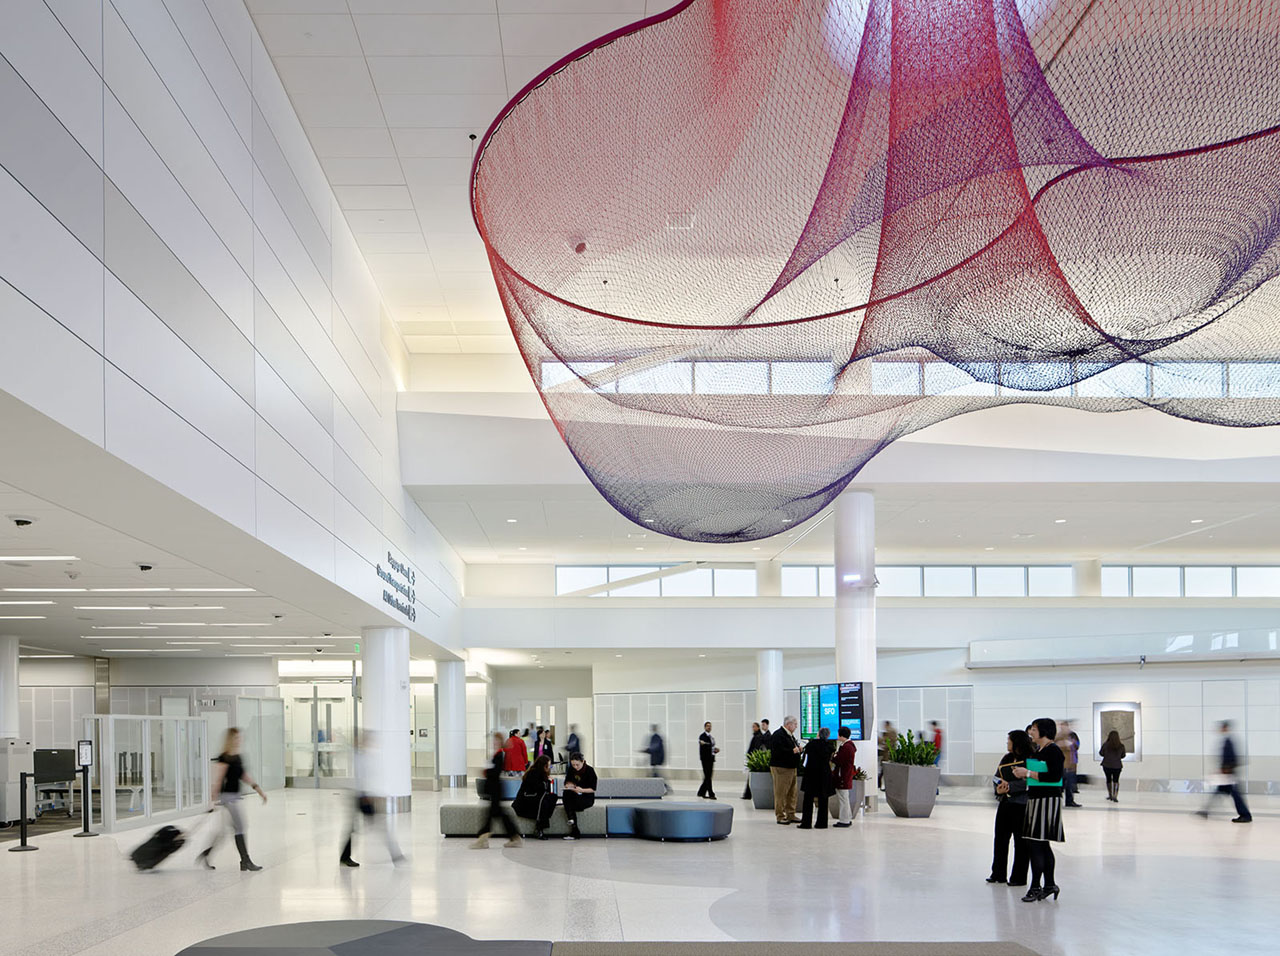 San Fransisco Airport Terminal concourse